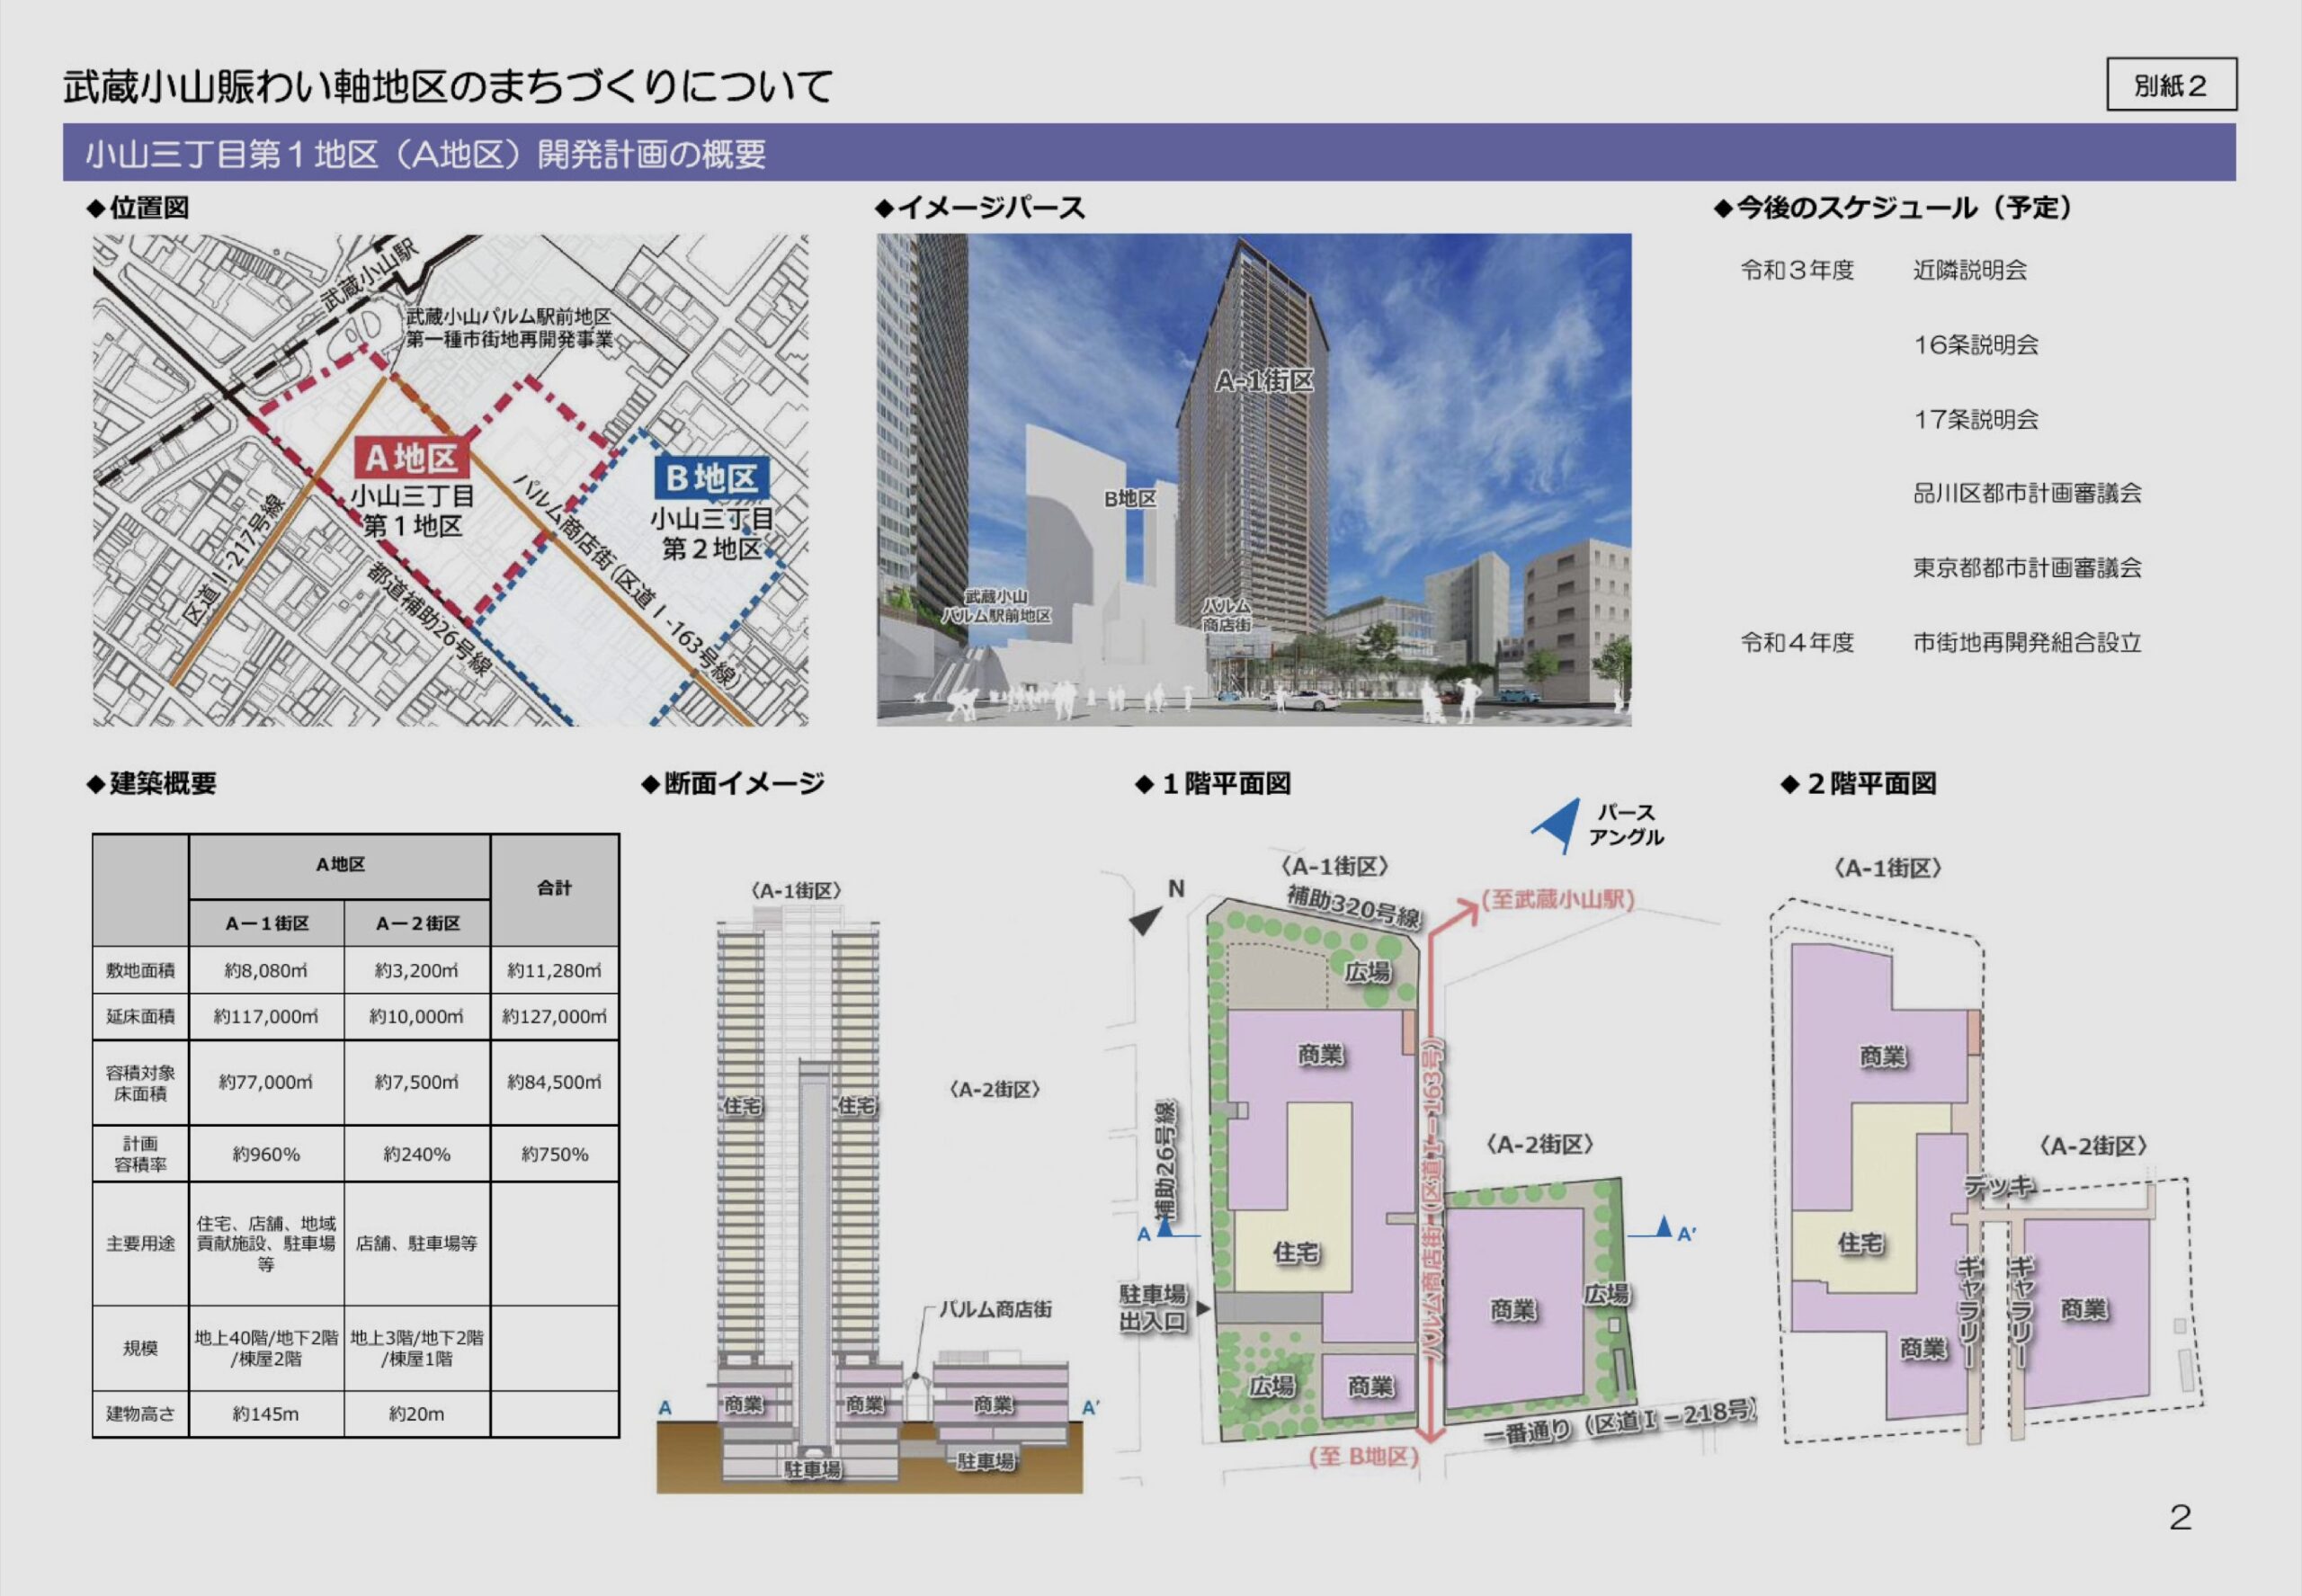 武蔵小山駅周辺再開発の説明会が開催されます パルム商店街が超高層ビルに挟まれる 田中さやか